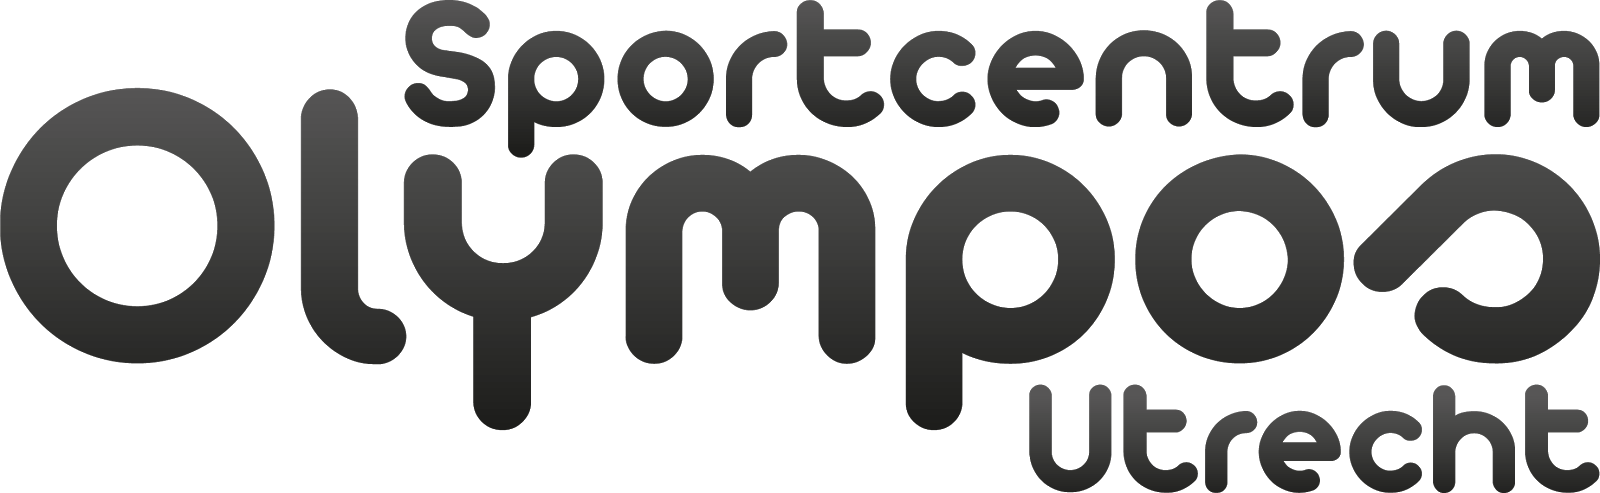 het logo van Olympos